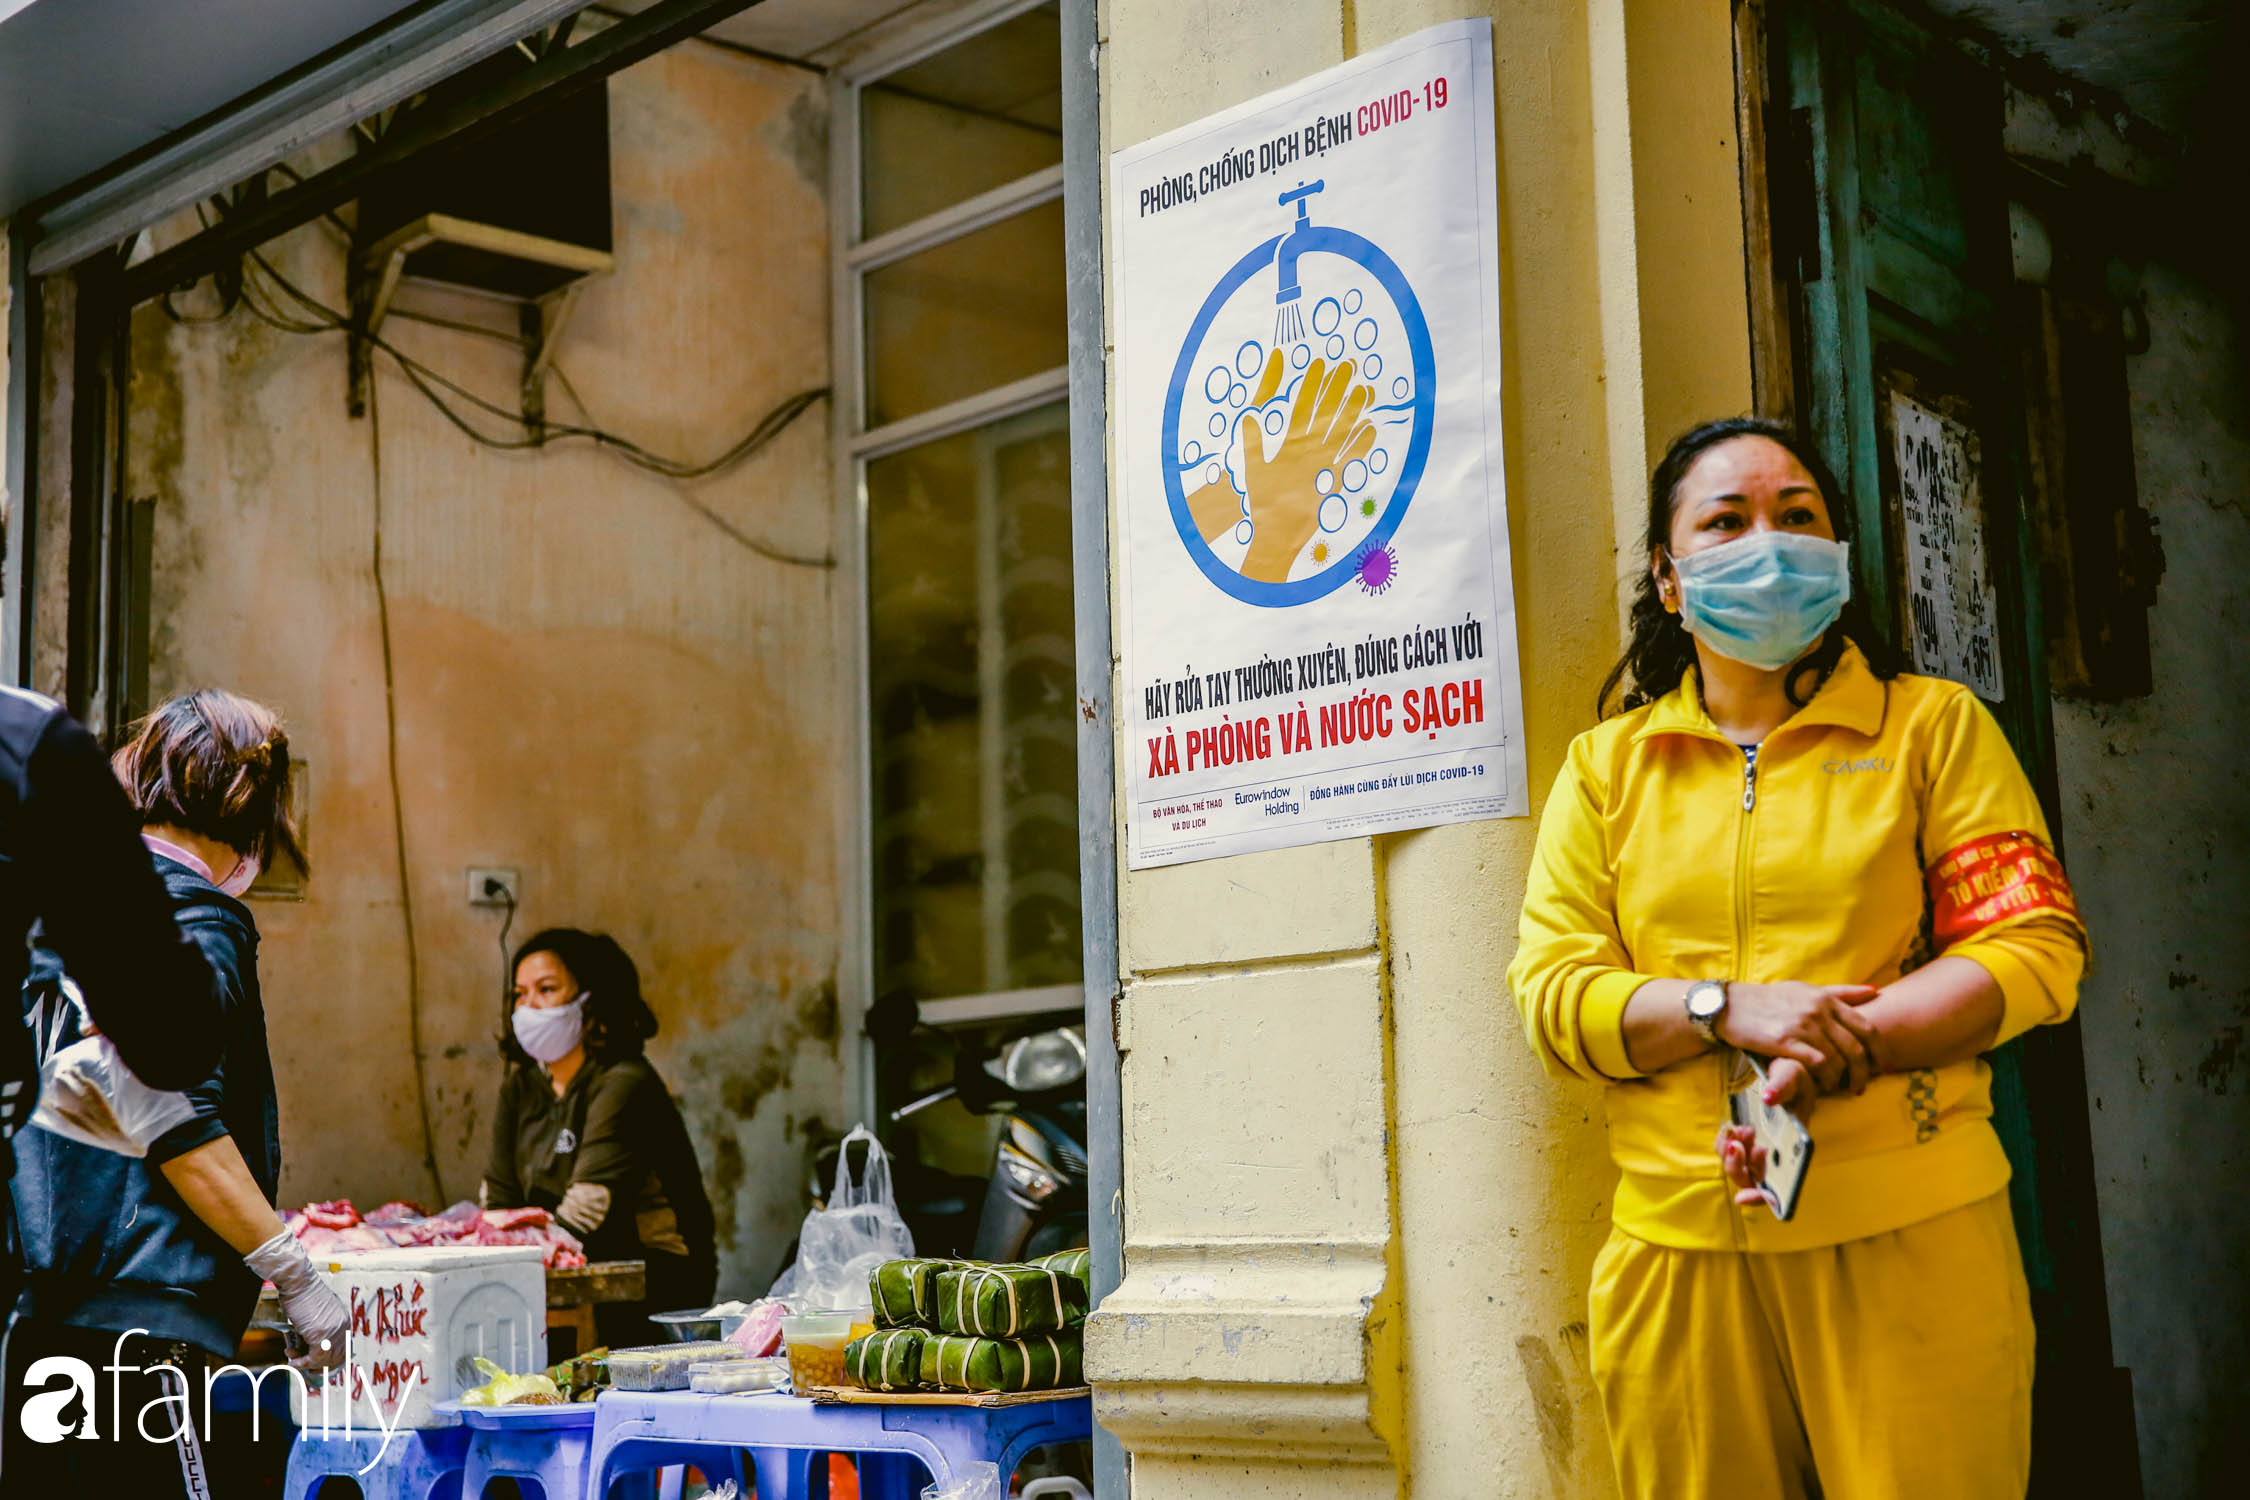 Khu chợ trong phố cổ Hà Nội kẻ vạch giãn cách 2 mét, chỉ bán hàng cho những người chịu đo thân nhiệt, đeo khẩu trang - Ảnh 10.